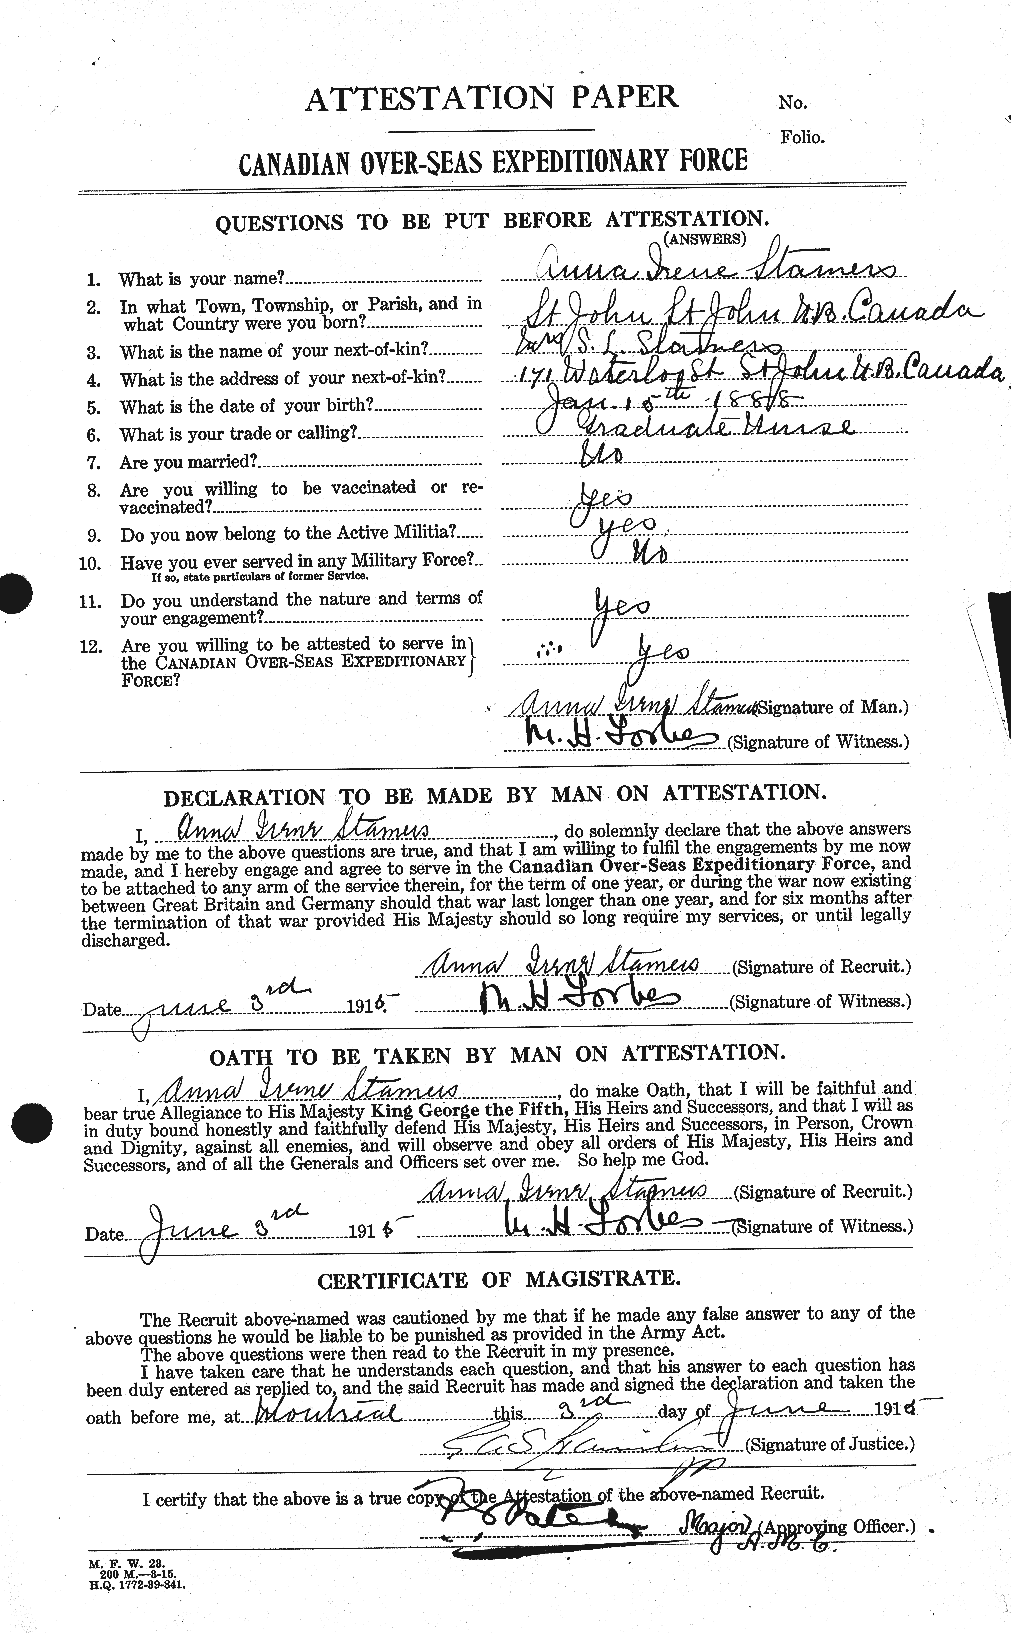 Dossiers du Personnel de la Première Guerre mondiale - CEC 116507a